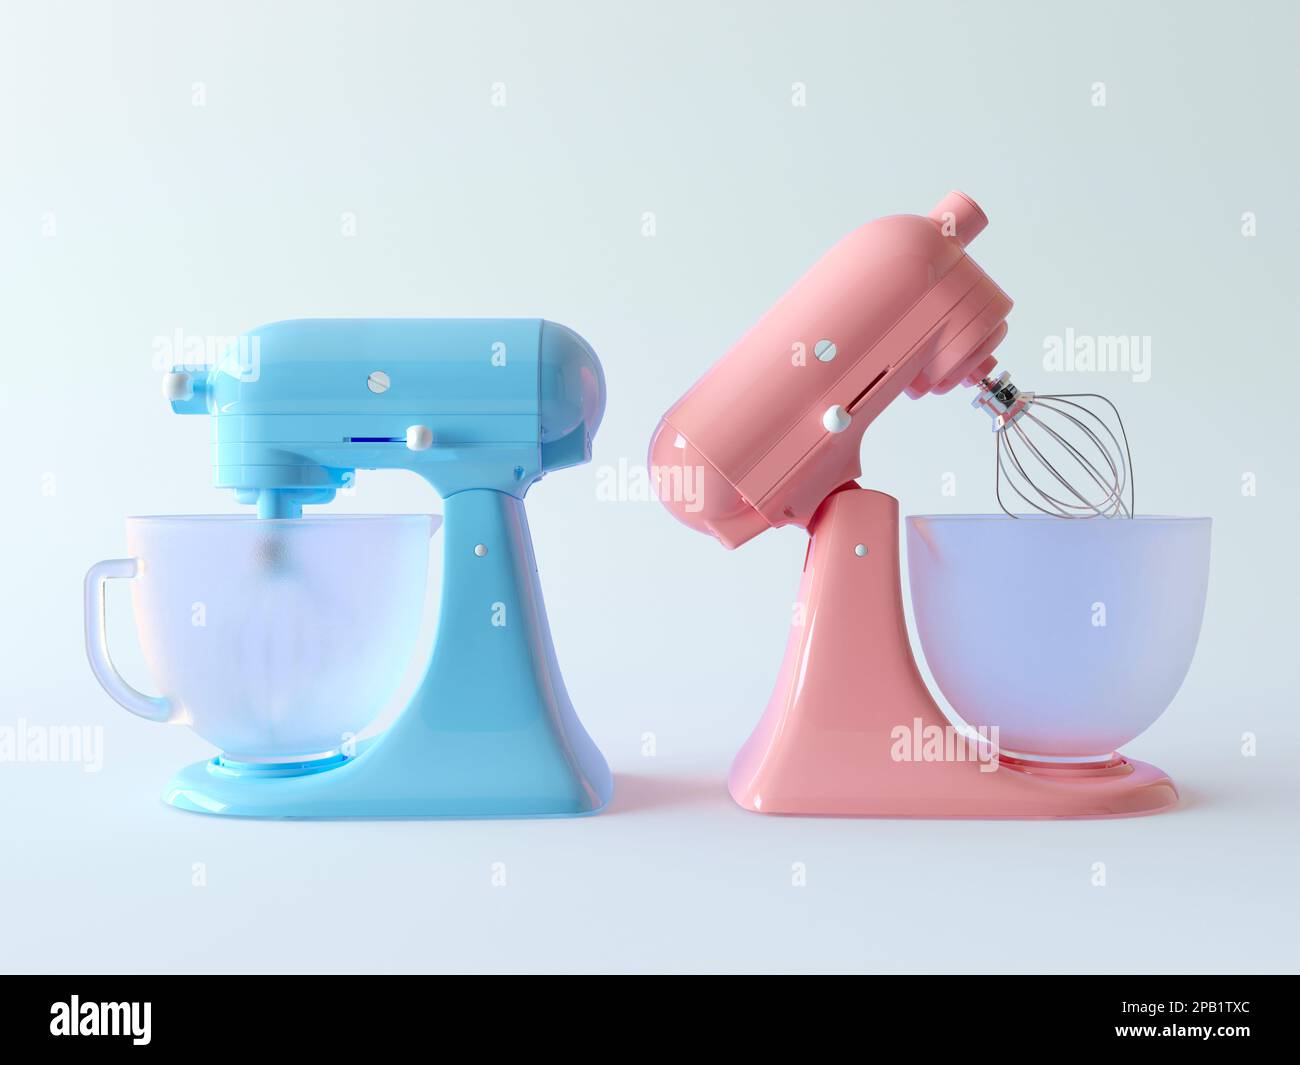 Stationärer Mixer mit gefrorener Glasschale zum Schlagen von Sahne und  Süßwaren. Niedlicher Cartoon-Stil, pastellrosa und blaue Mixer, niedliche  Ikonen Stockfotografie - Alamy